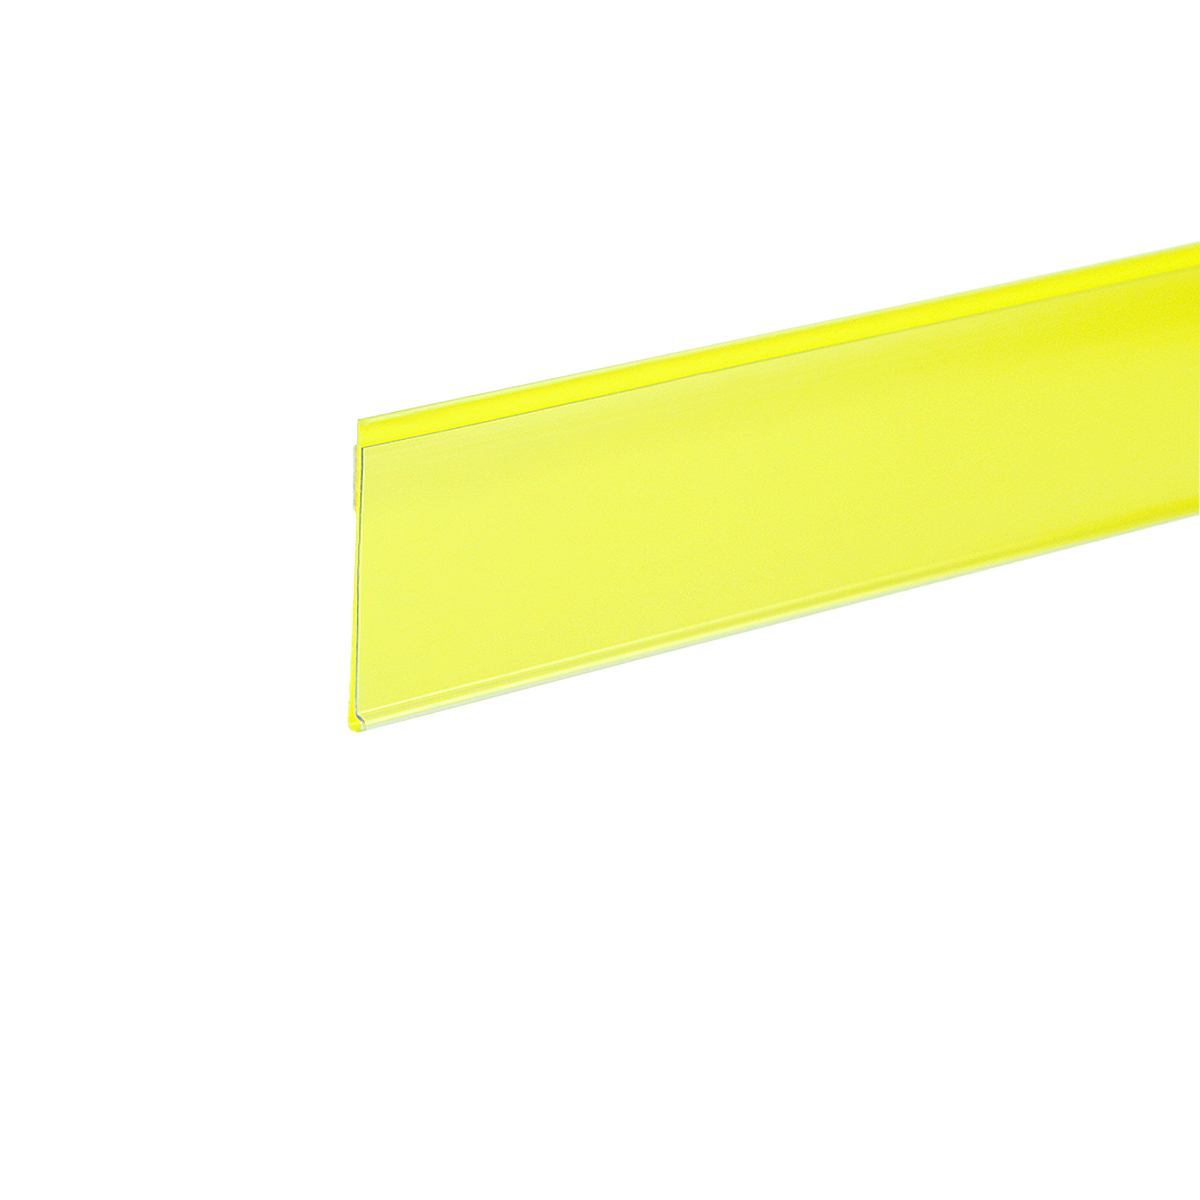 Ценникодержатель полочный самоклеящийся DBR39 SL длина 1000 мм., цвет желтый